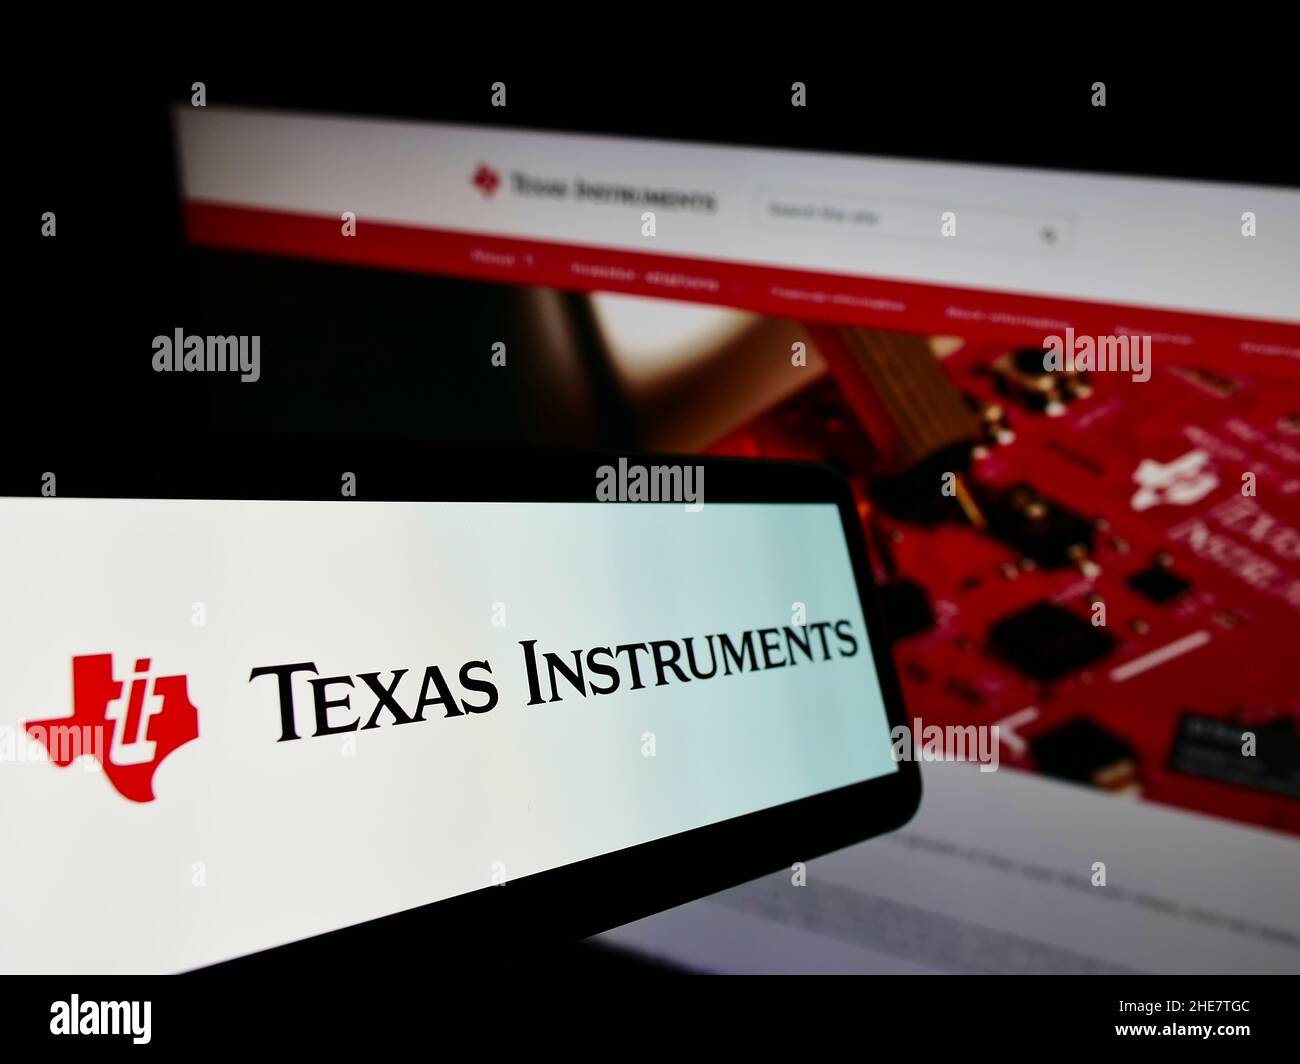 Telefono cellulare con logo della società statunitense Texas Instruments Incorporated (ti) sullo schermo di fronte al sito web. Messa a fuoco al centro-sinistra del display del telefono. Foto Stock